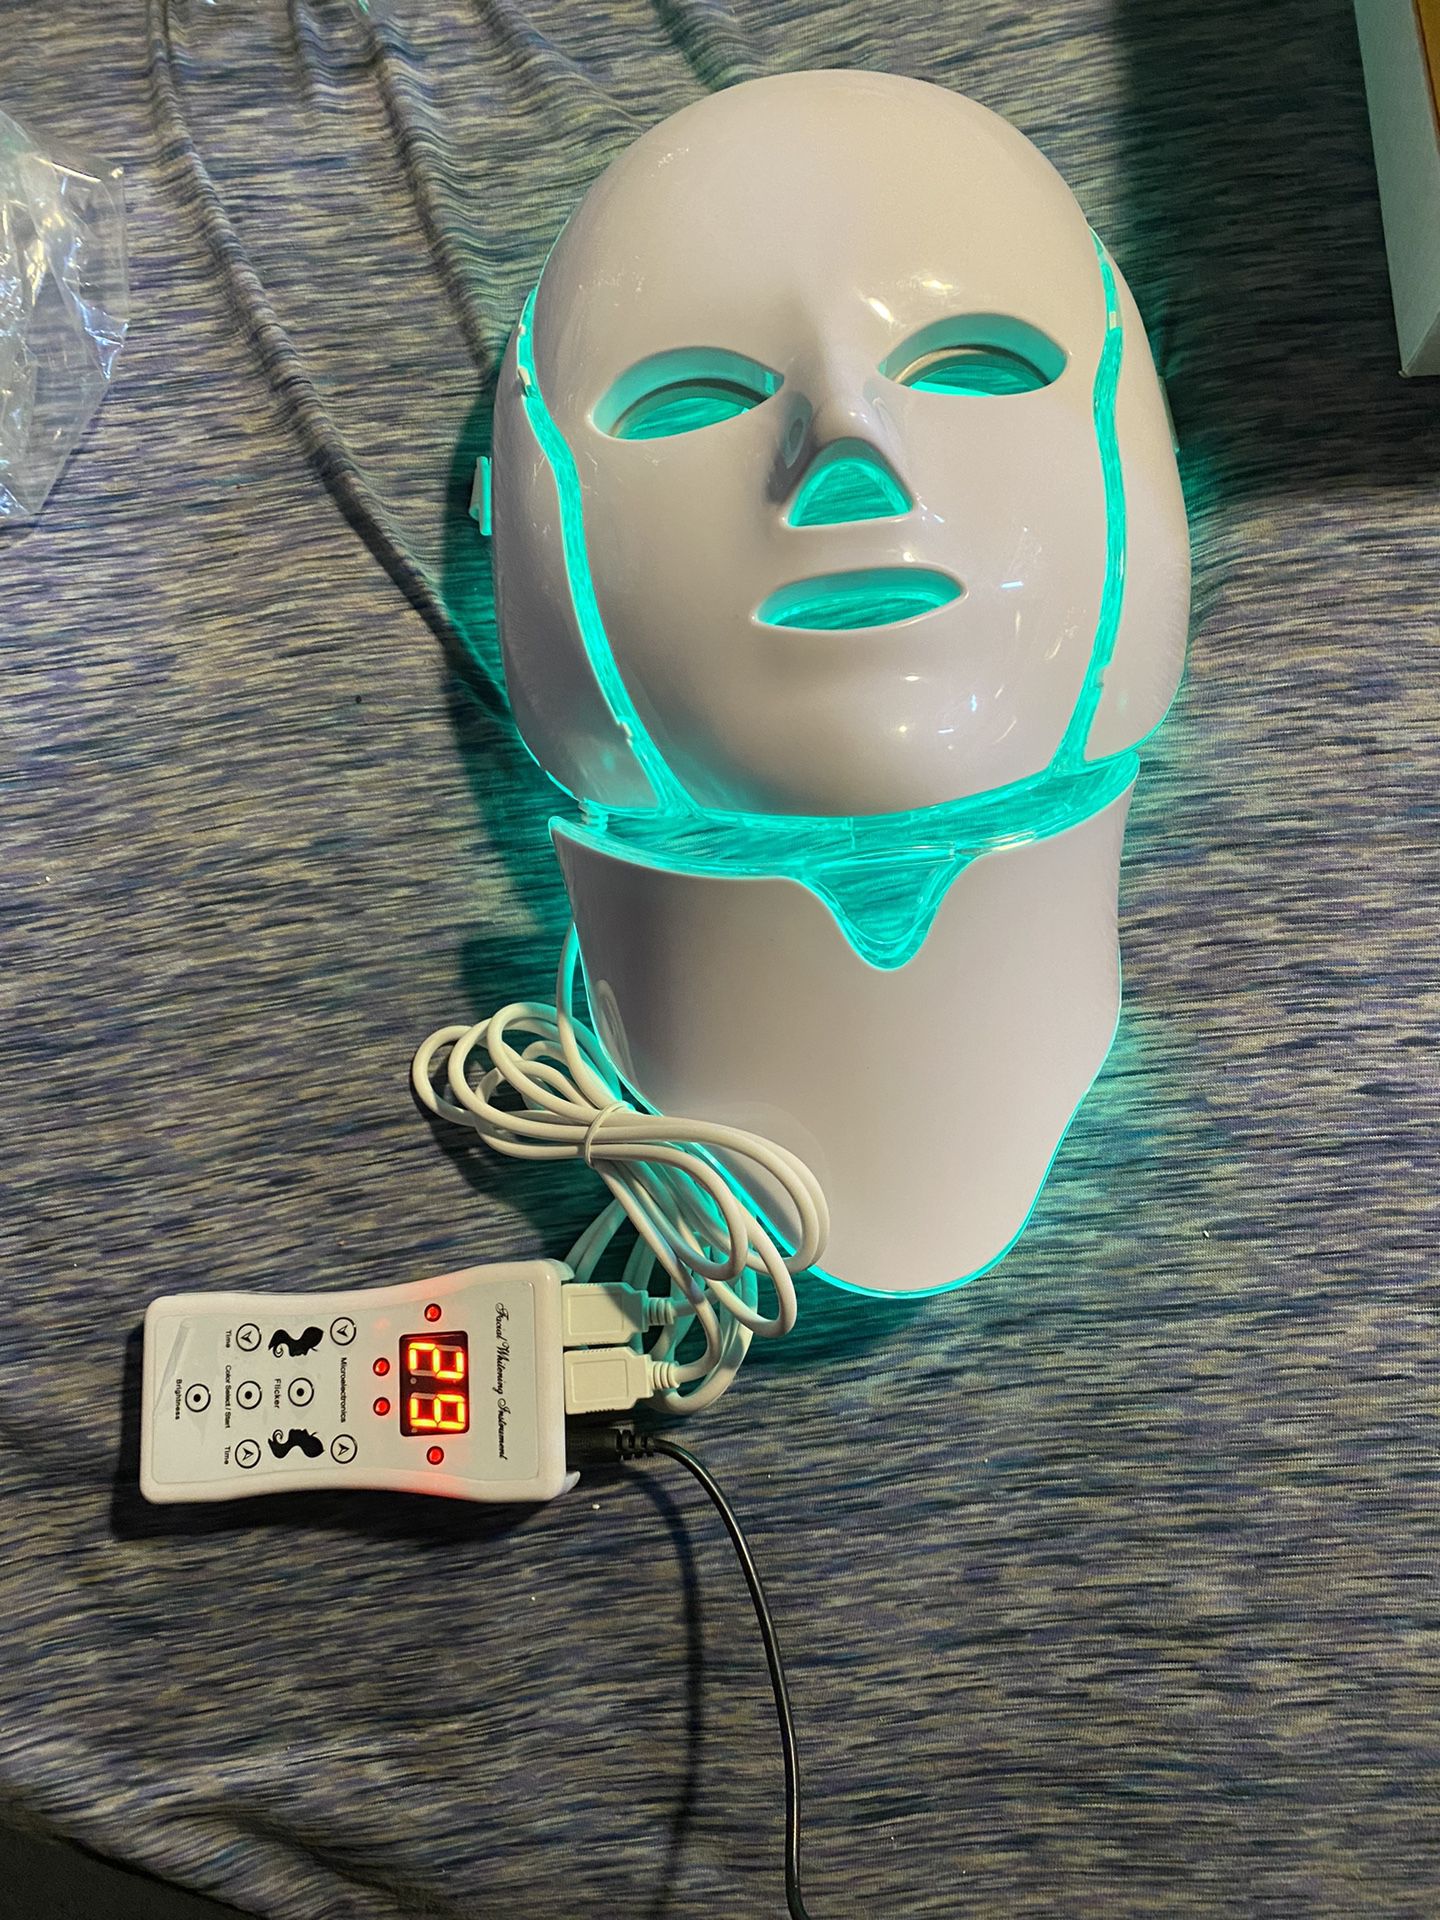 Nutriskin LED Face + Neck Mask For Skin Care